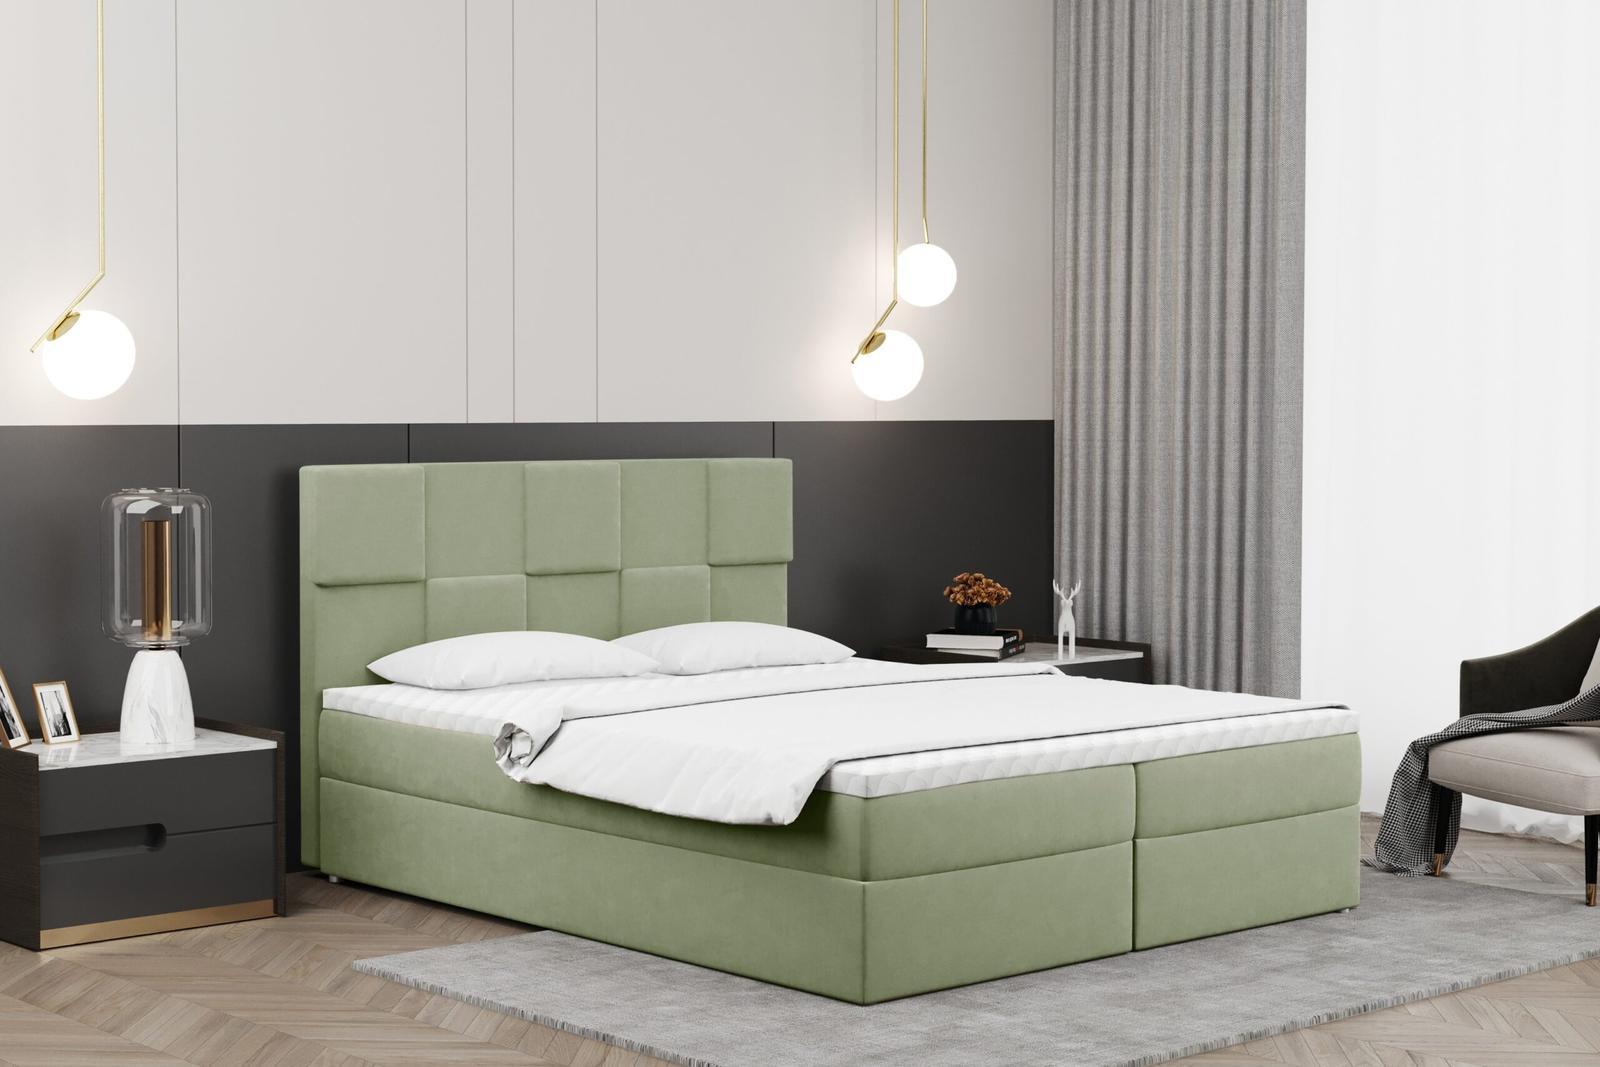  Łóżko CLARA 160x200 cm z funkcją przechowywania i materacem do sypialni jasnozielone nr. 1